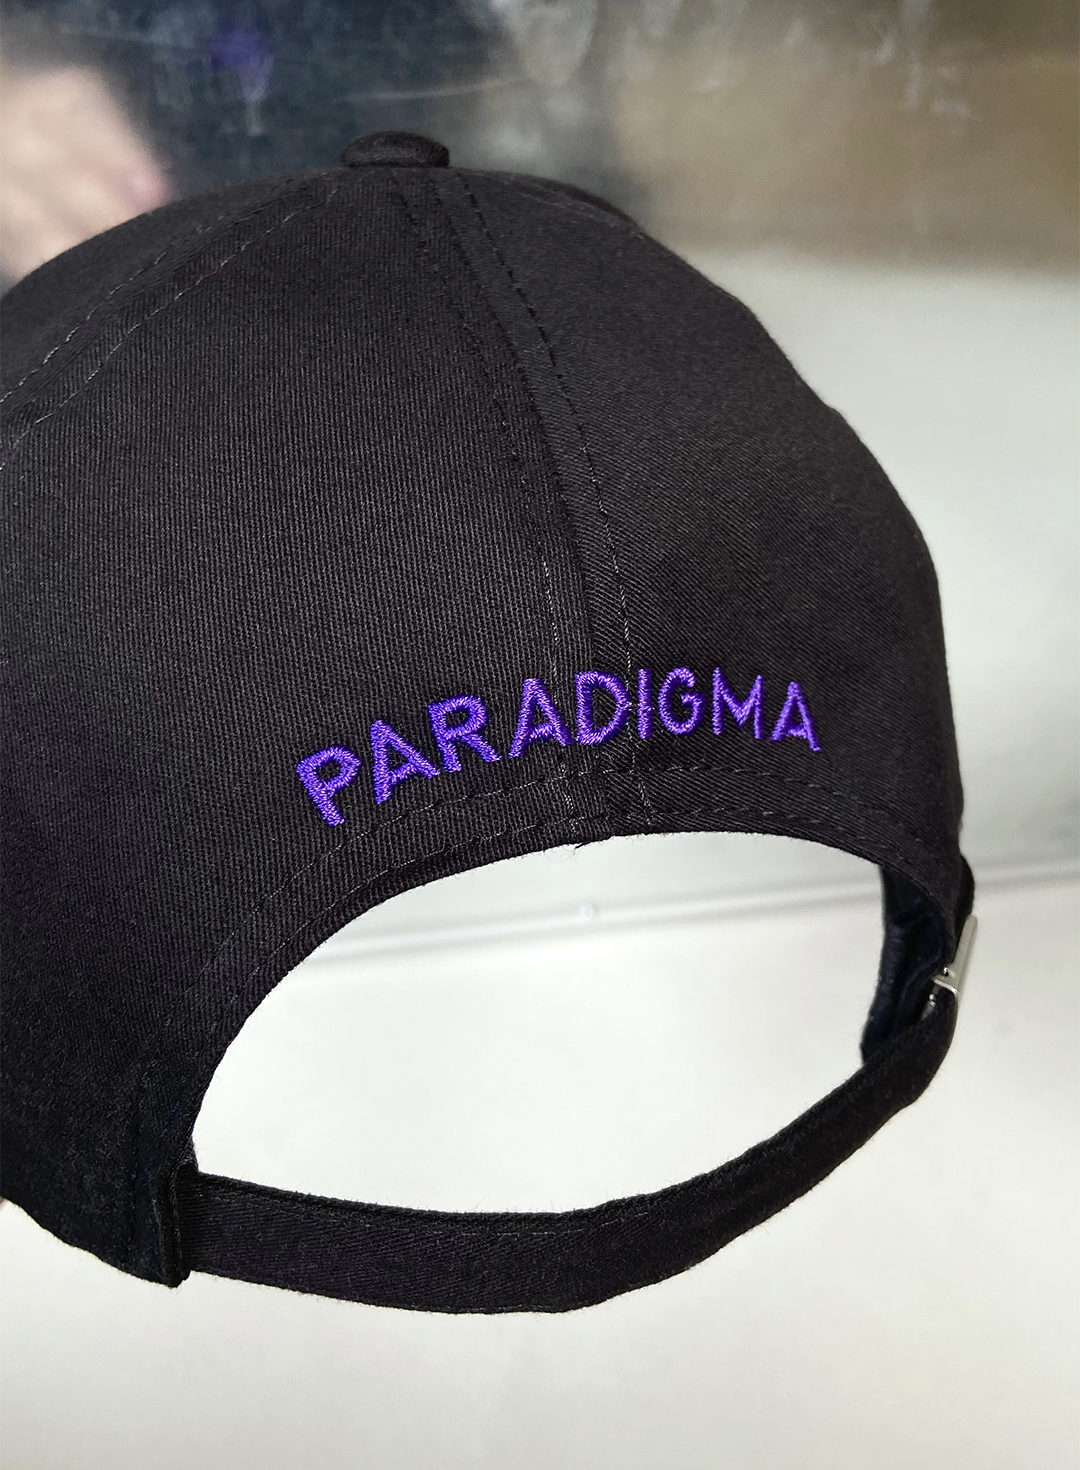 Кепка Paradigma Logo Black